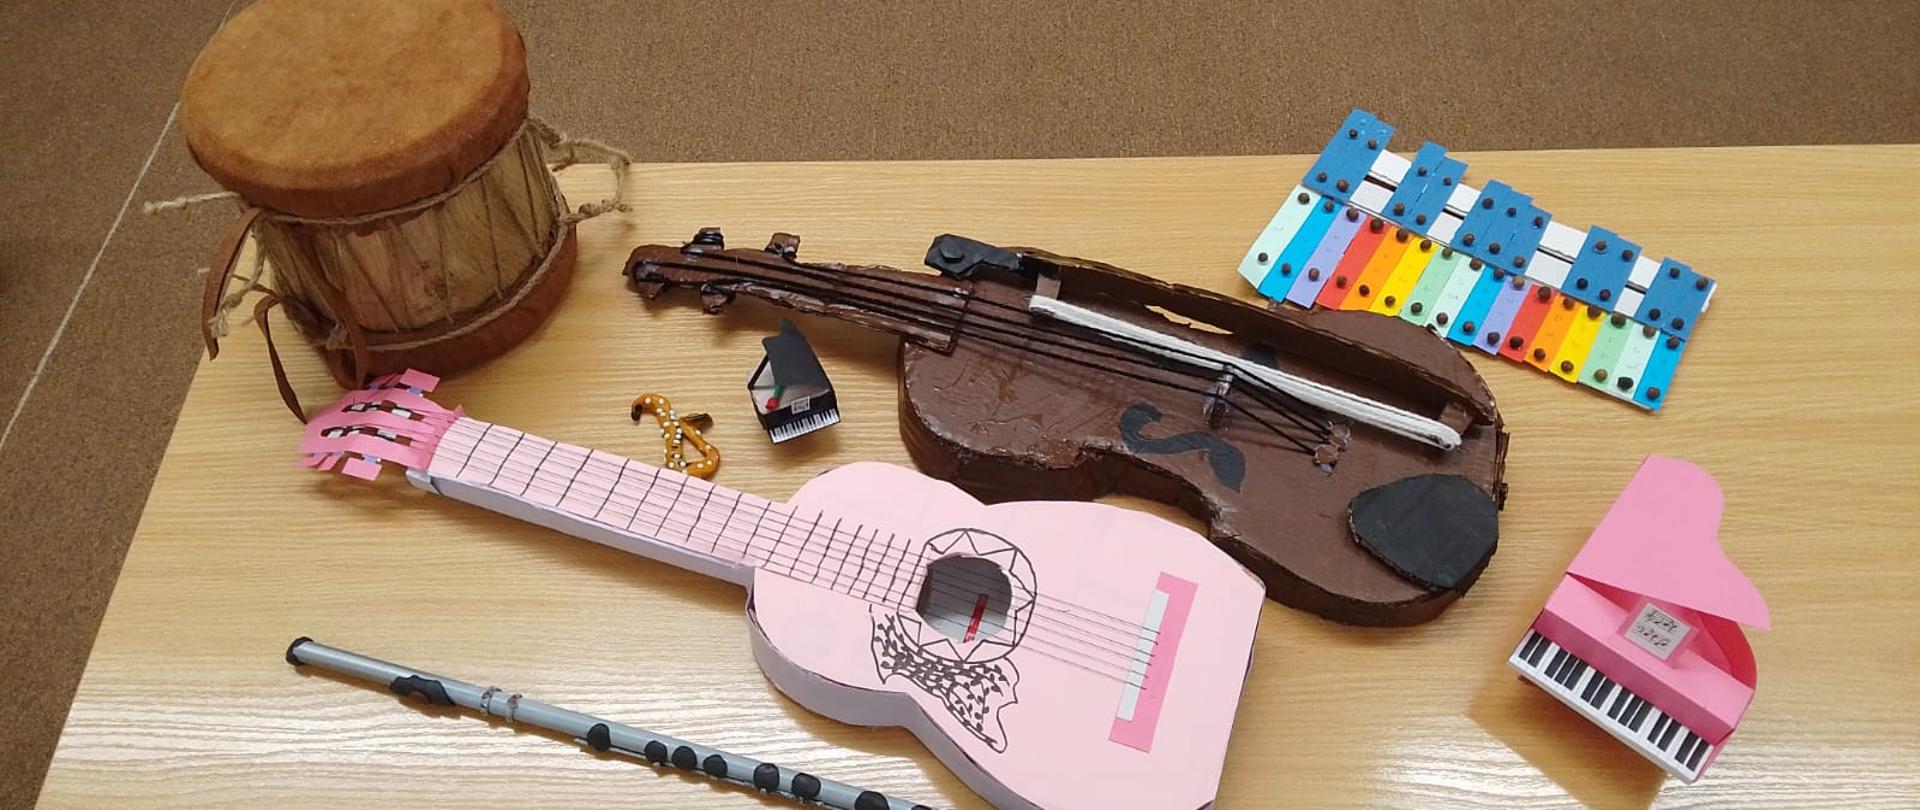 Instrumenty muzyczne wykonane przez uczniów z plasteliny, papieru i innych materiałów